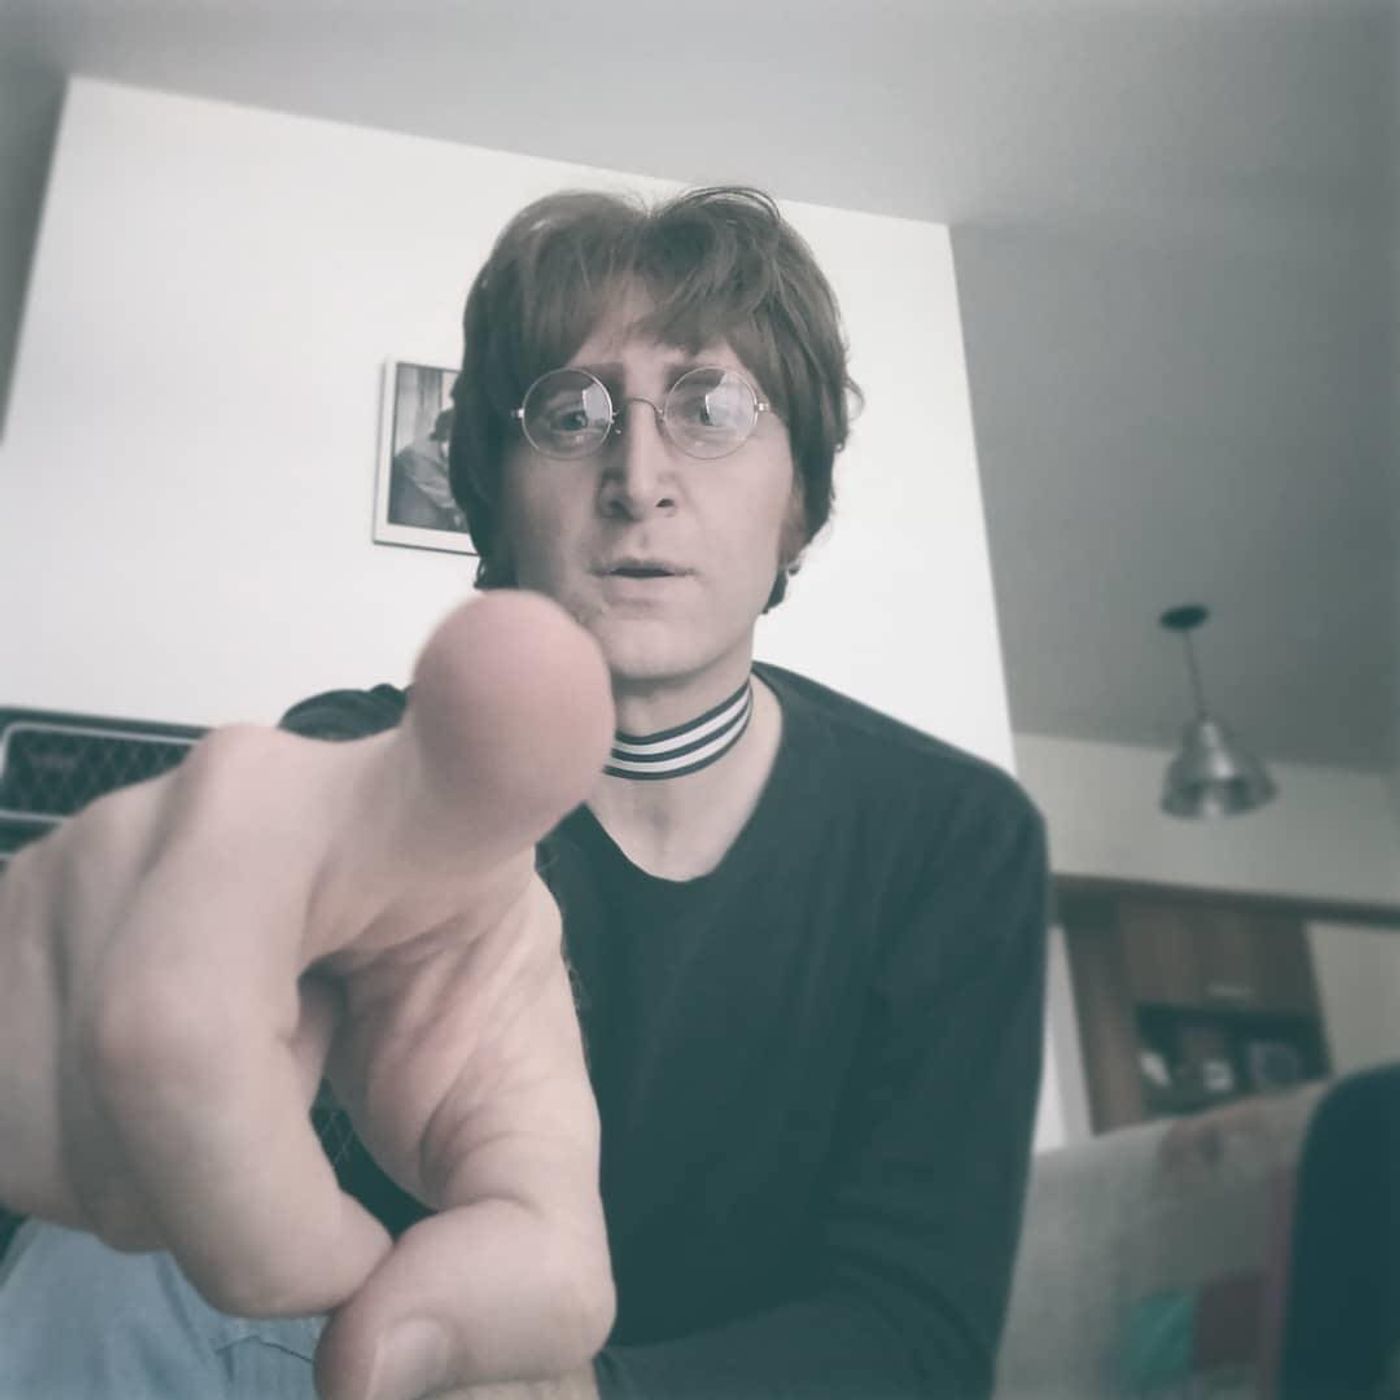 The Argentine John Lennon